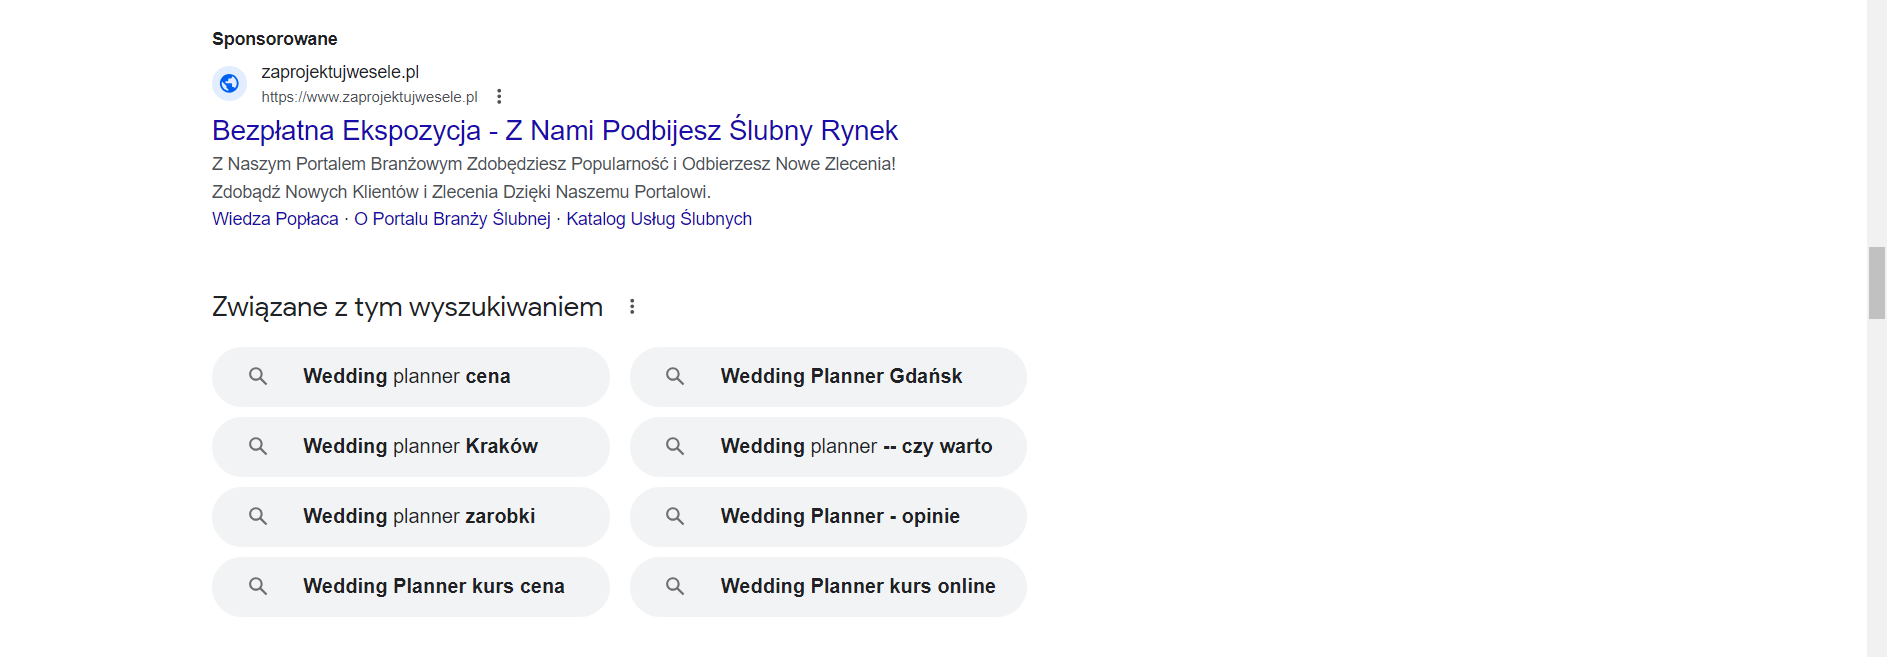 Zrzut widoku na sponsorowane wyniki wyszukiwania w Google Ads, pojawiające się na dole strony. 